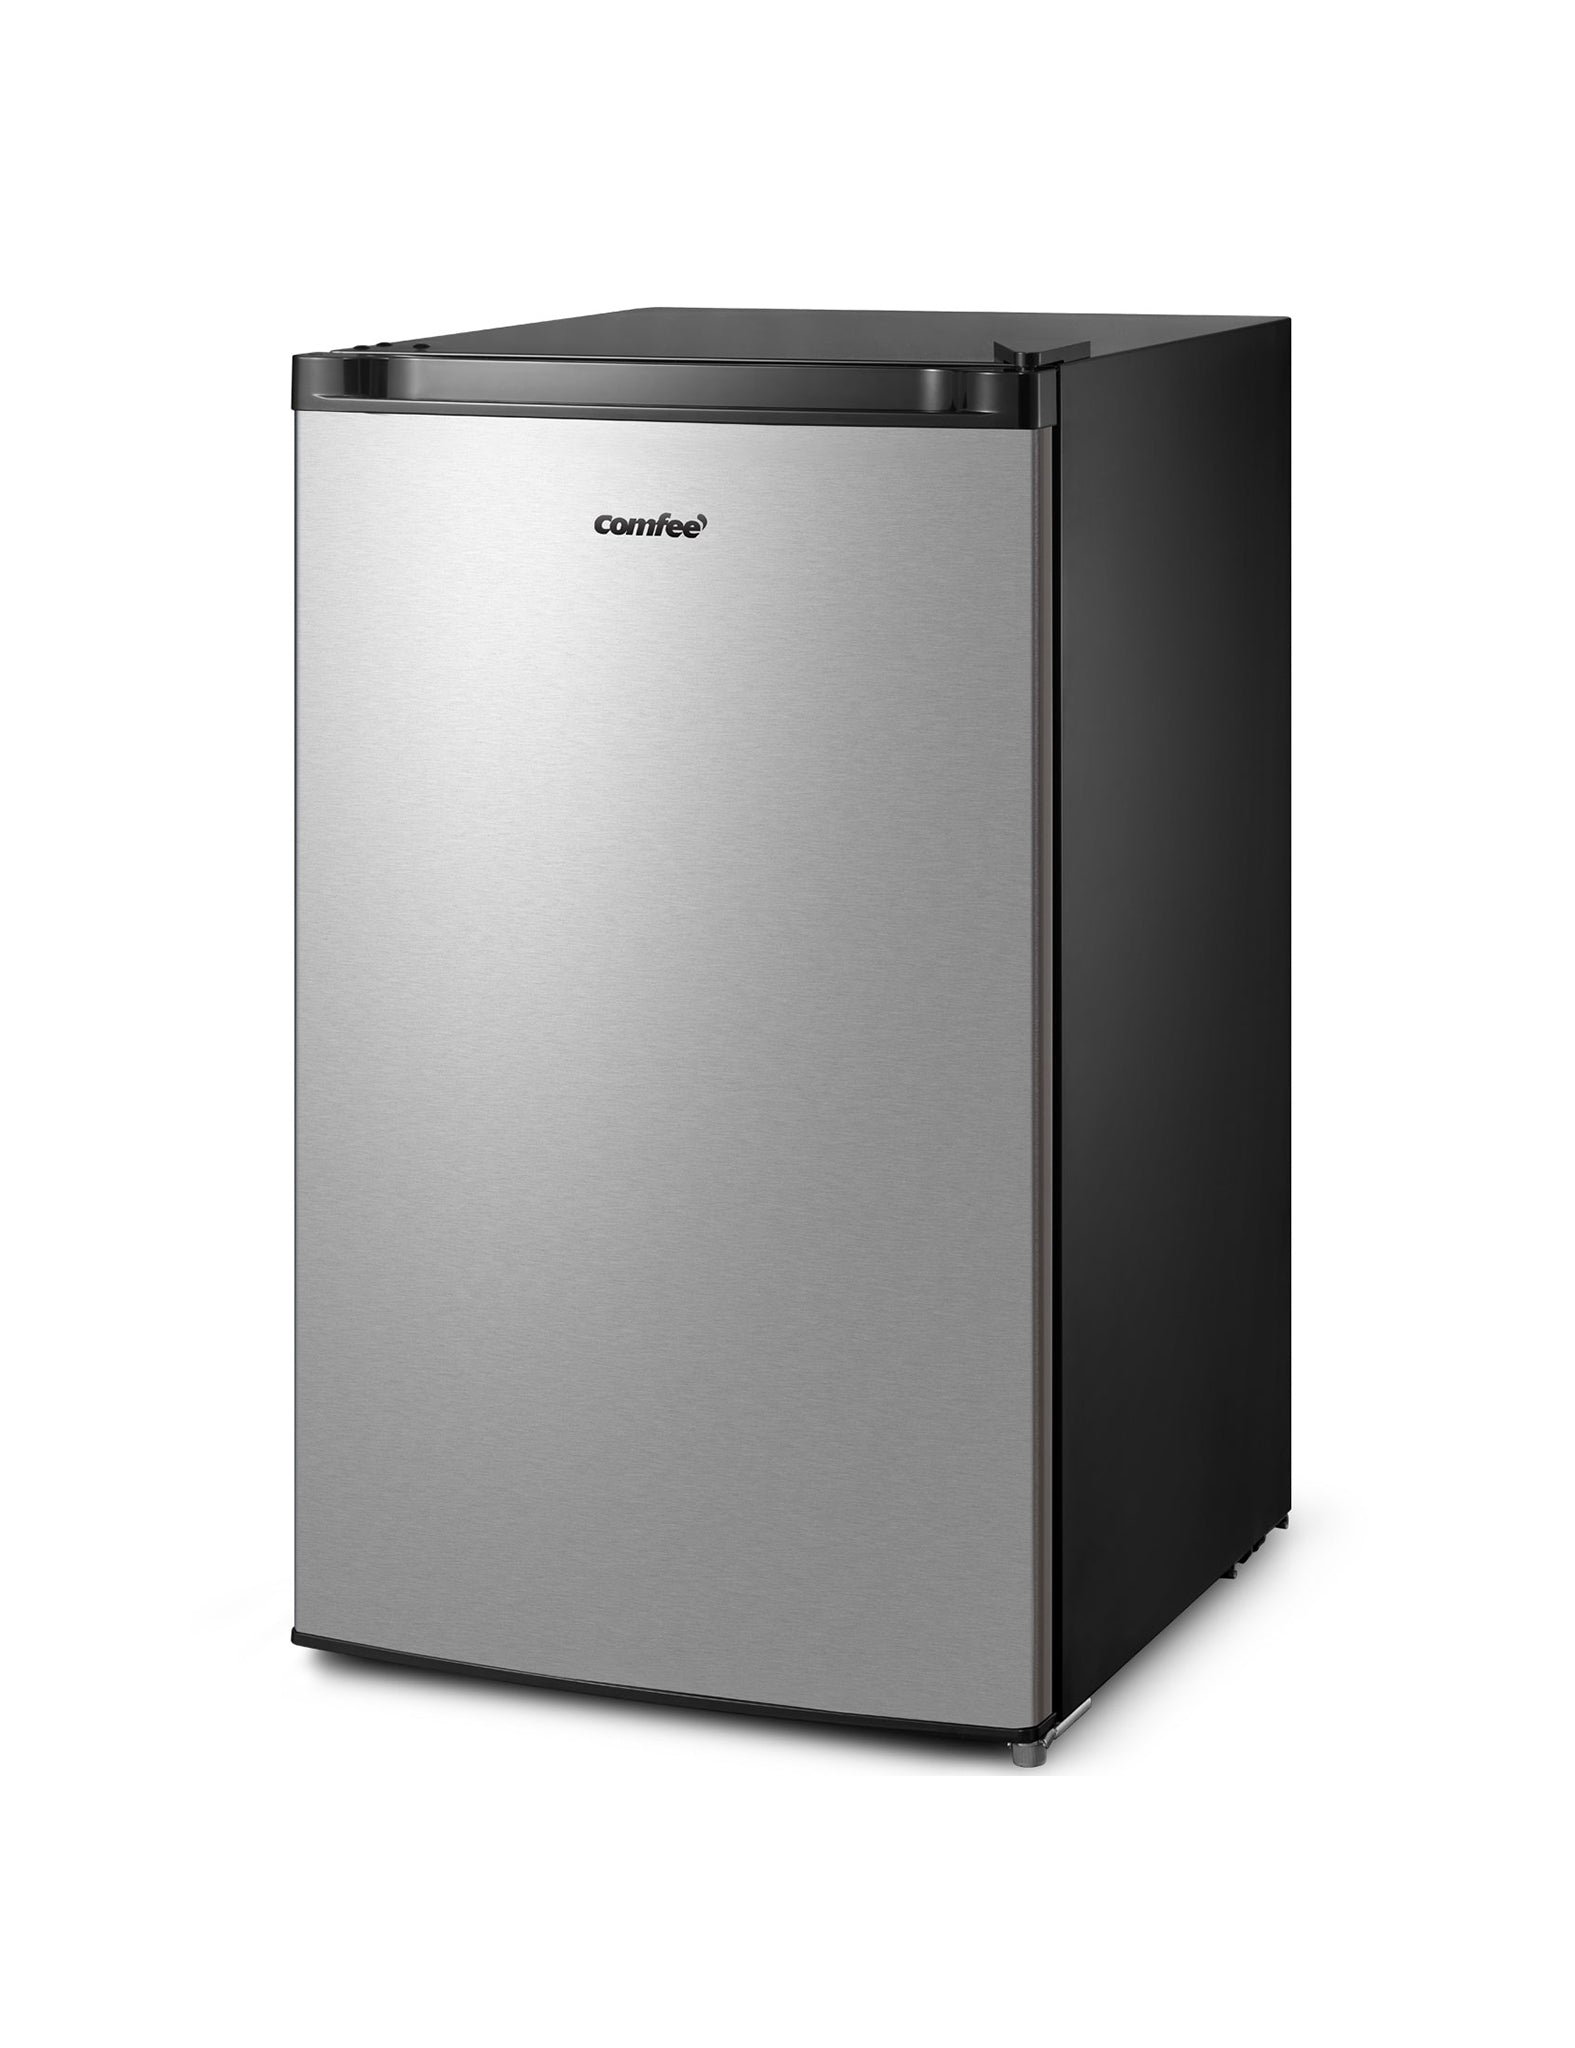 grey compact refrigerator